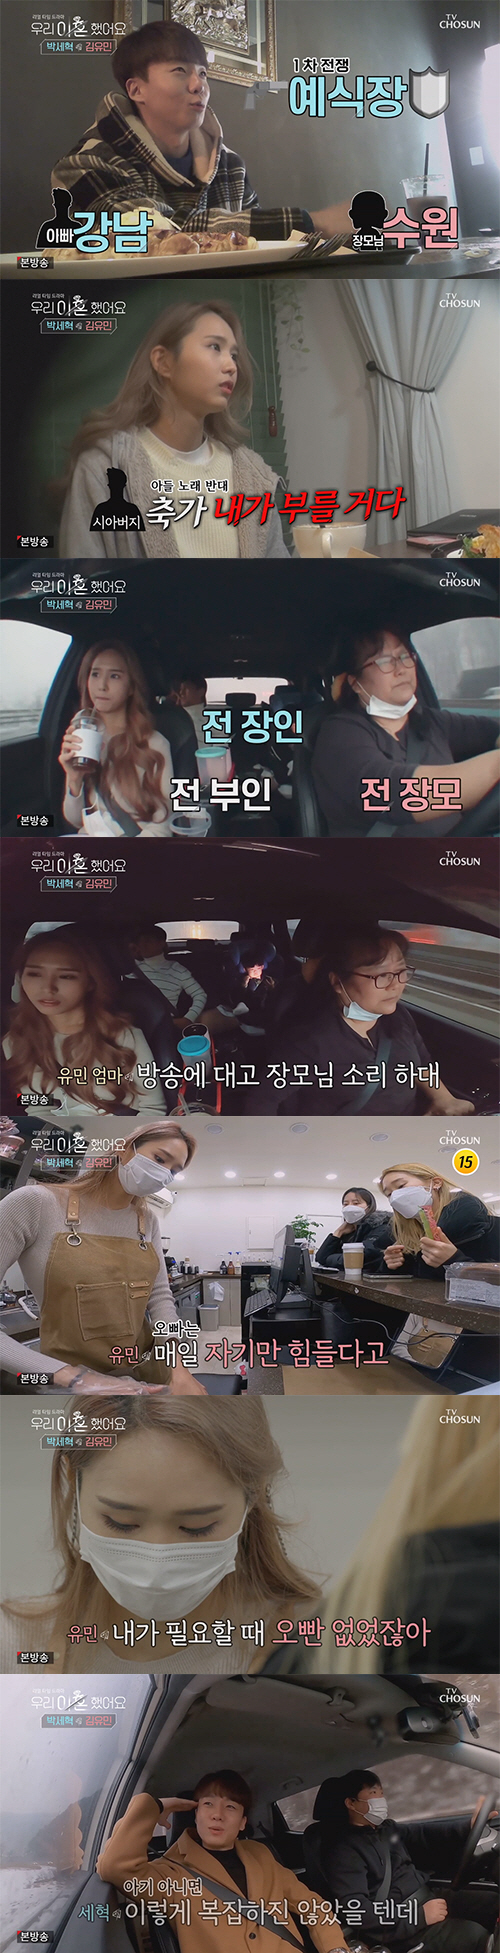 박세혁-김유민, 6개월 초고속 이혼커플 등장…풀리지 않는 섭섭함('우이혼…